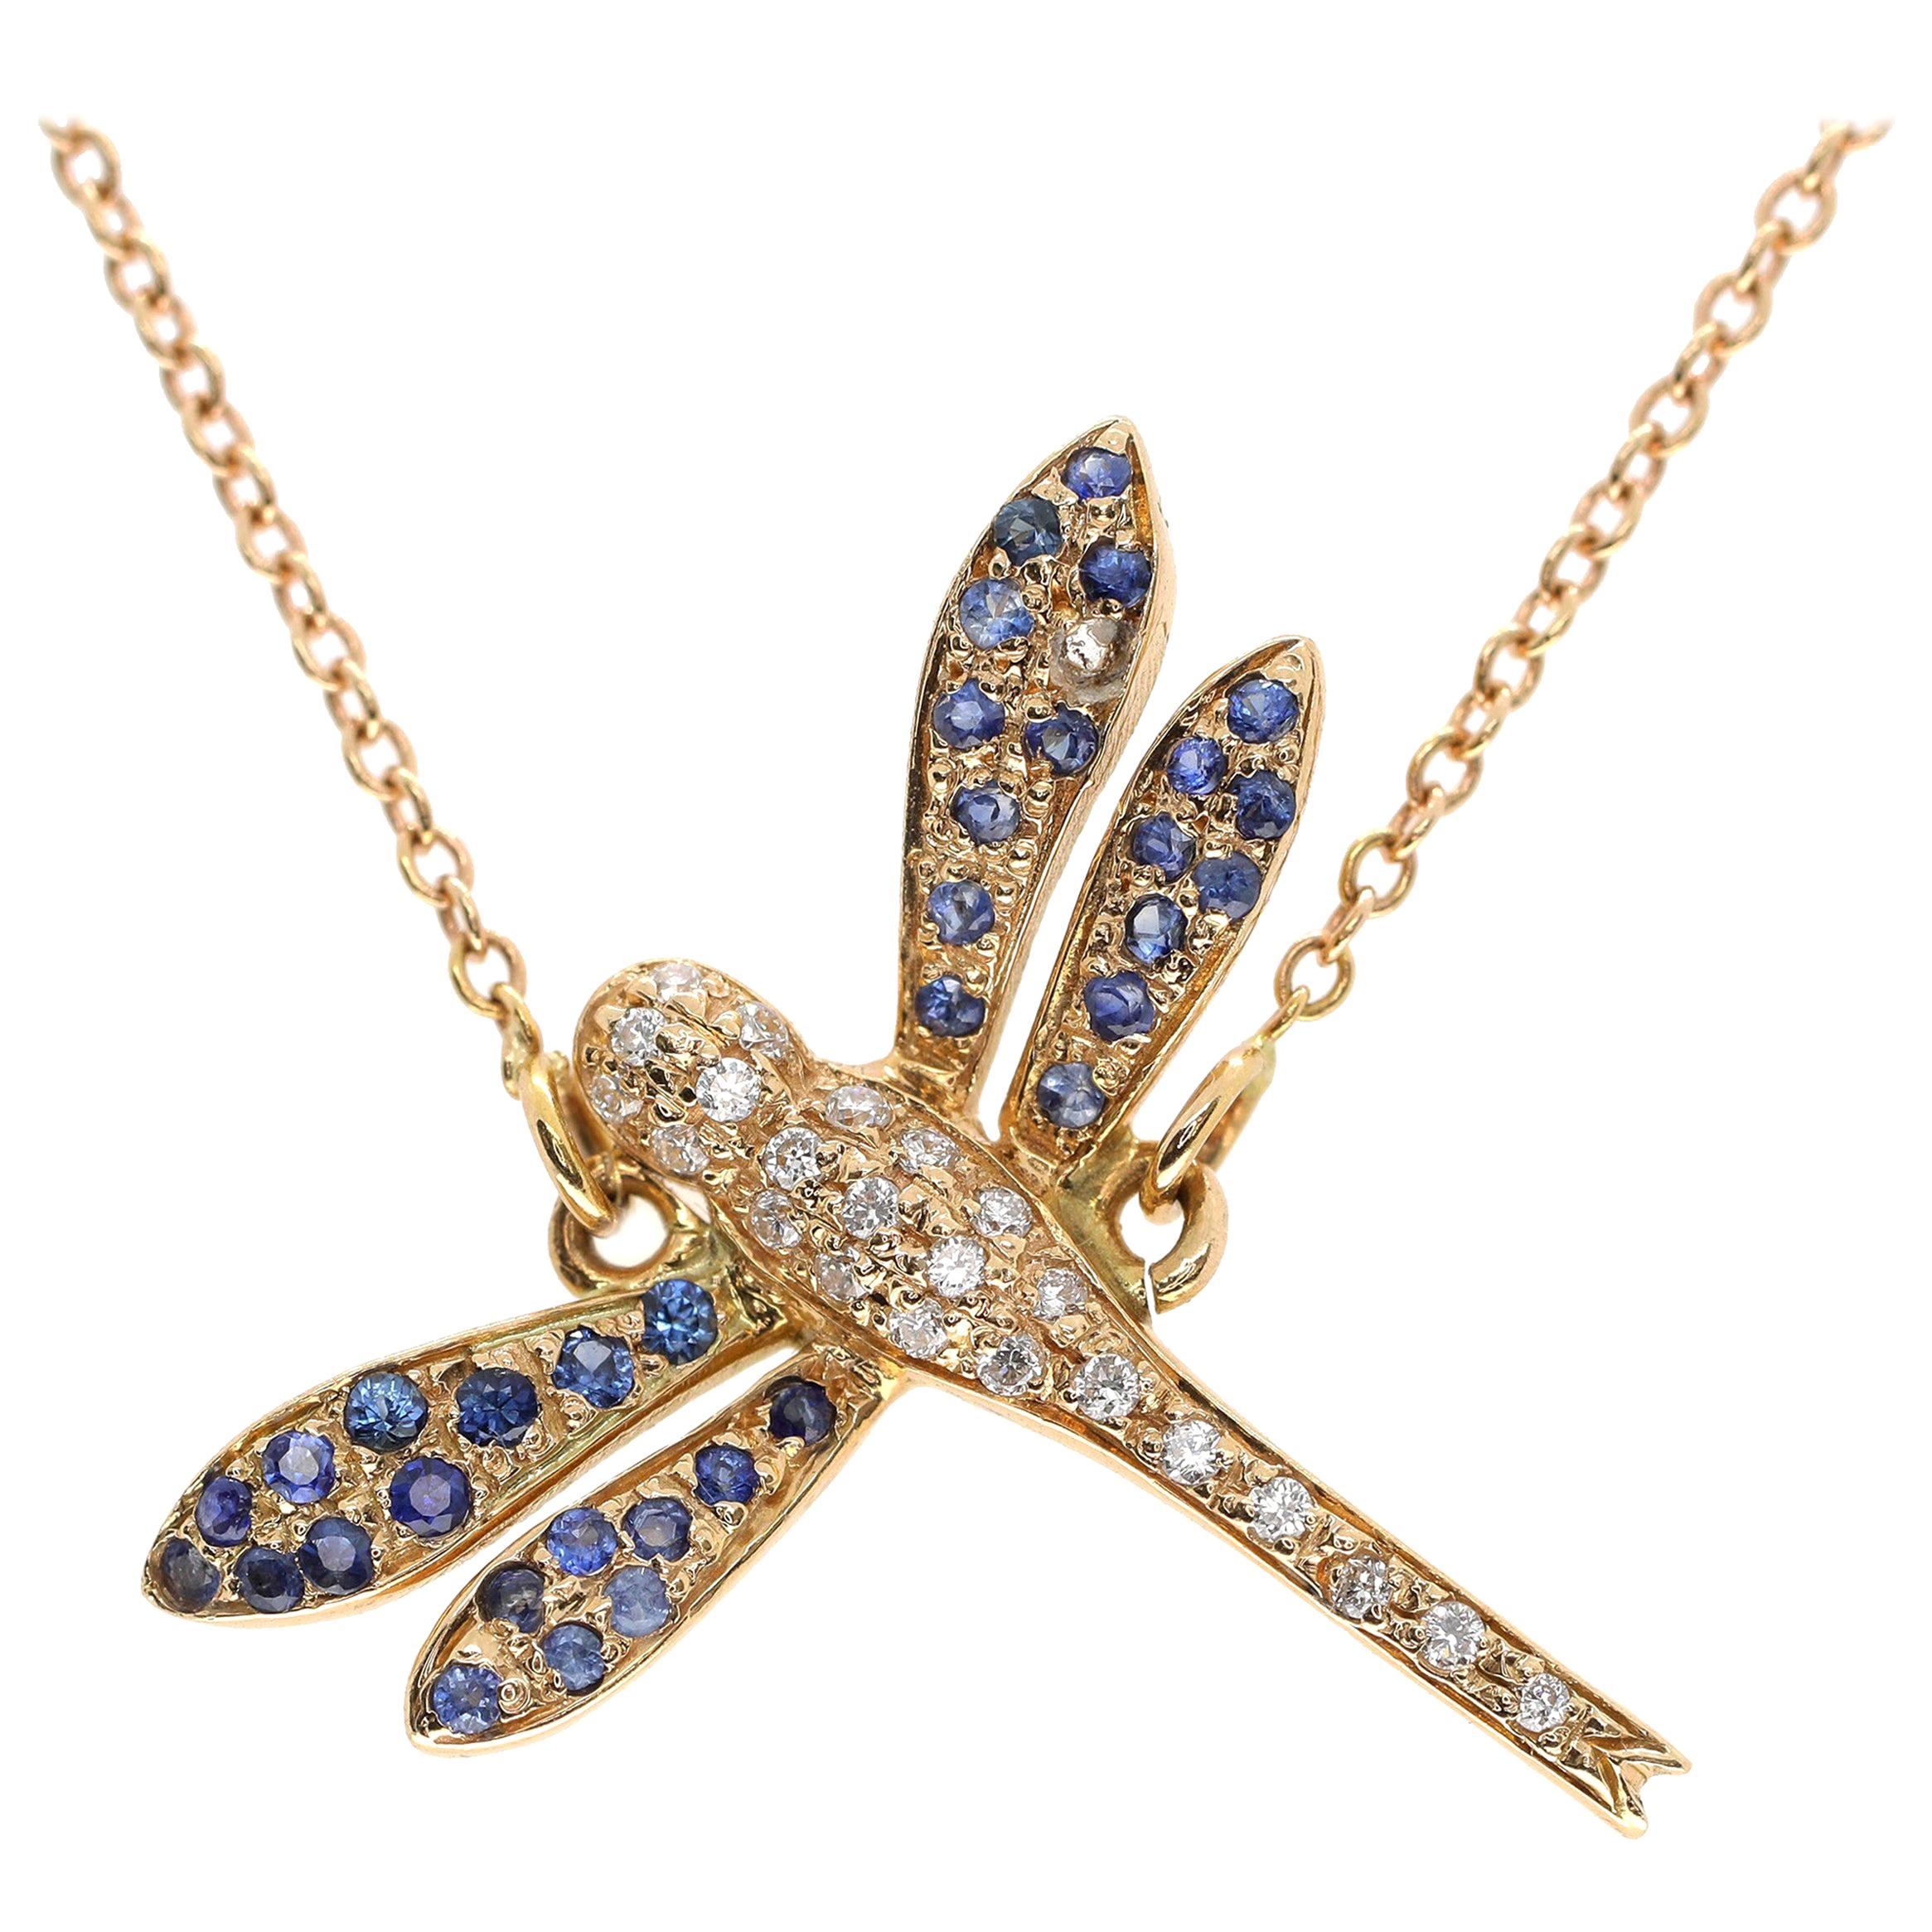 Ein zartes Armband aus 18 Karat Roségold mit einer einzelnen Libelle, besetzt mit weißen Diamanten und blauen Saphiren. Das Armband ist 18 Zentimeter lang und wiegt 2 Gramm.

Suchen Sie ein Set? Unsere Stücke sehen toll zusammen getragen aus.